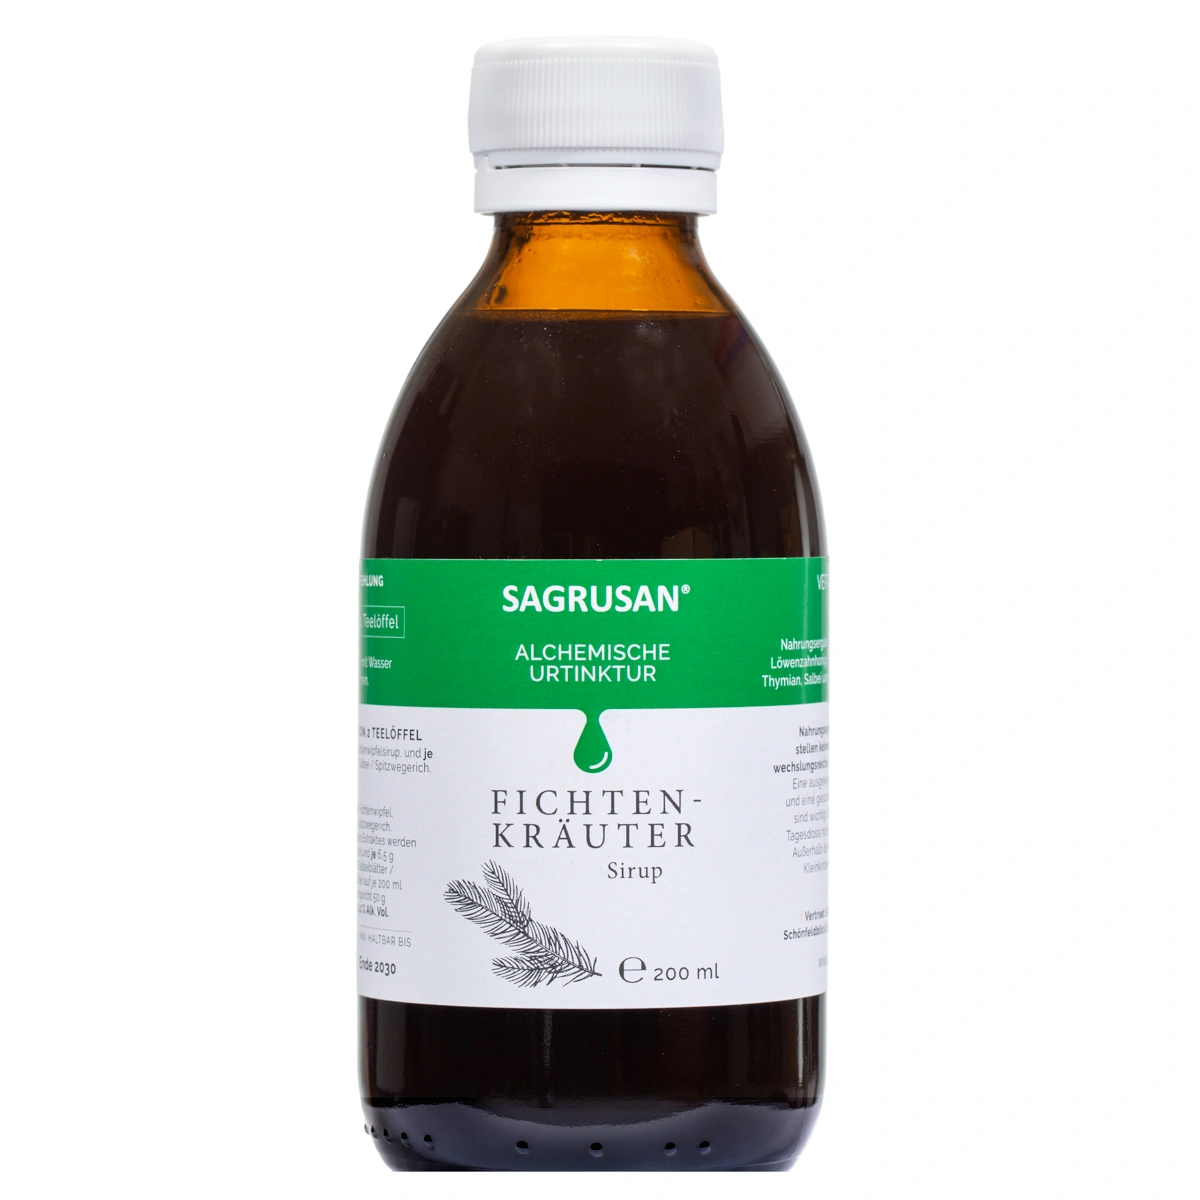 SAGRUSAN® Fichten-Kräuter Sirup, 200 ml